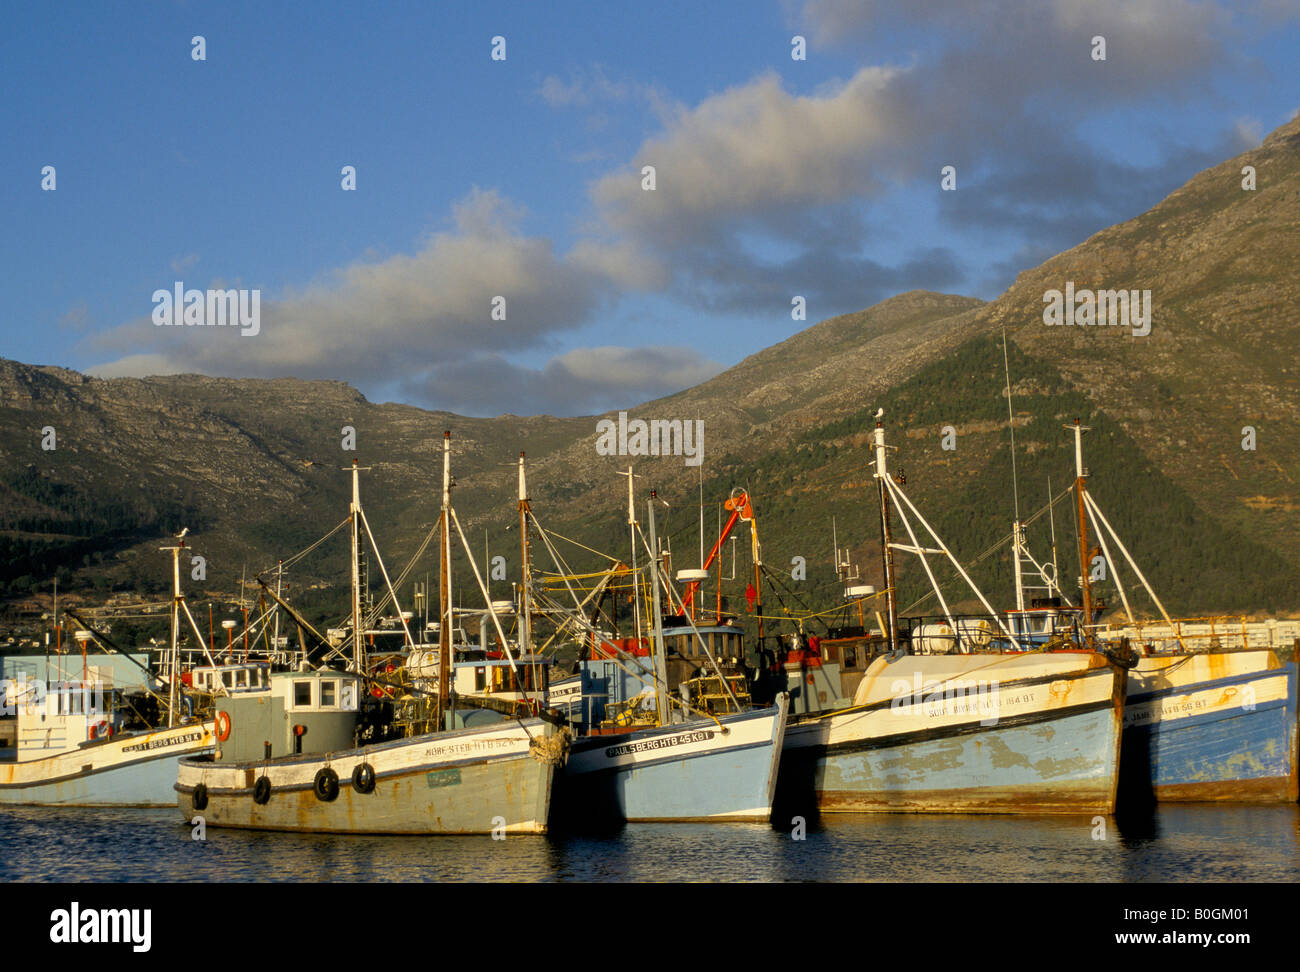 Bateaux de pêche dans le port de Hout Bay, Afrique du Sud. Banque D'Images